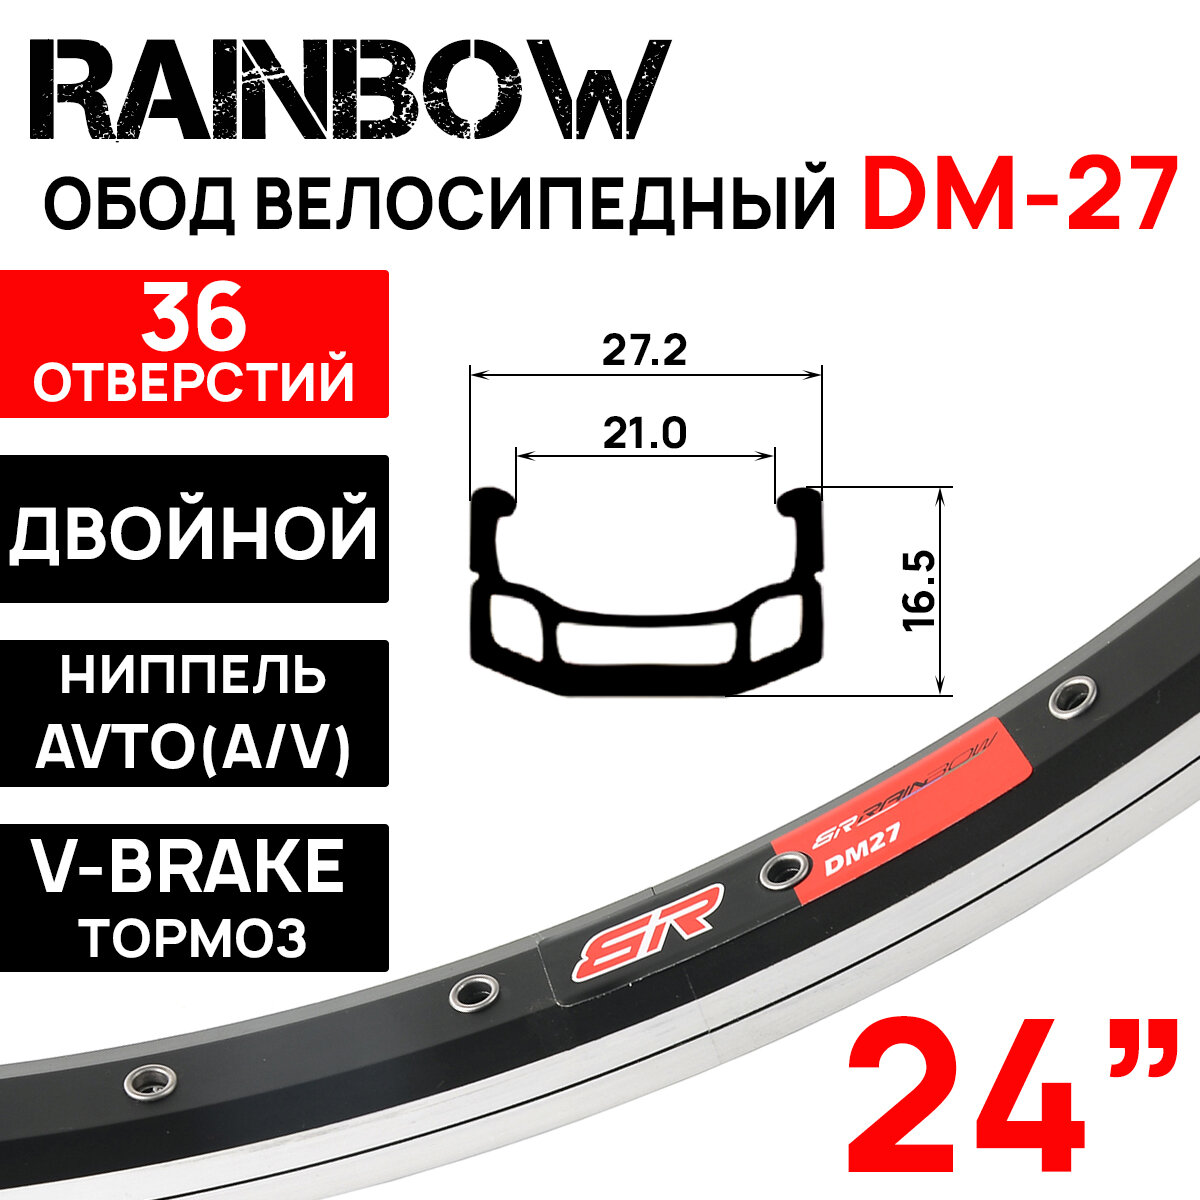 Обод двойной Rainbow DM-27 24" (507х21С), 36 отверстий, ниппель: A/V (авто), пистонированный, алюминиевый сплав 7005, черно-серебристый